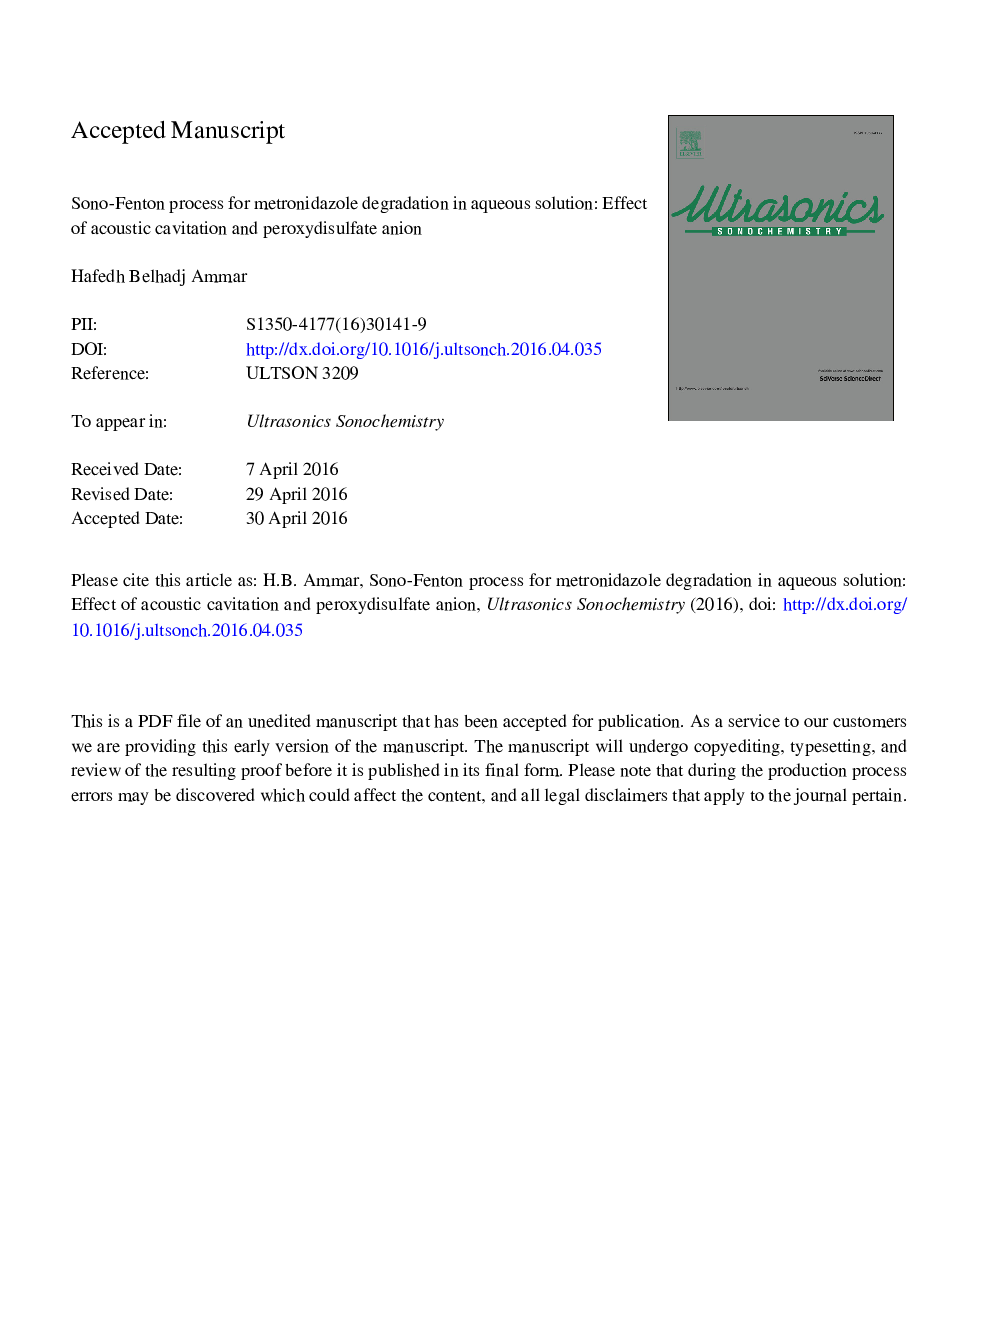 فرایند سونوفنتون برای تجزیه مترونیدازول در محلول آبی: اثر کاویتیشن آکوستیک و آنیون پراکسیدیل سولفات 